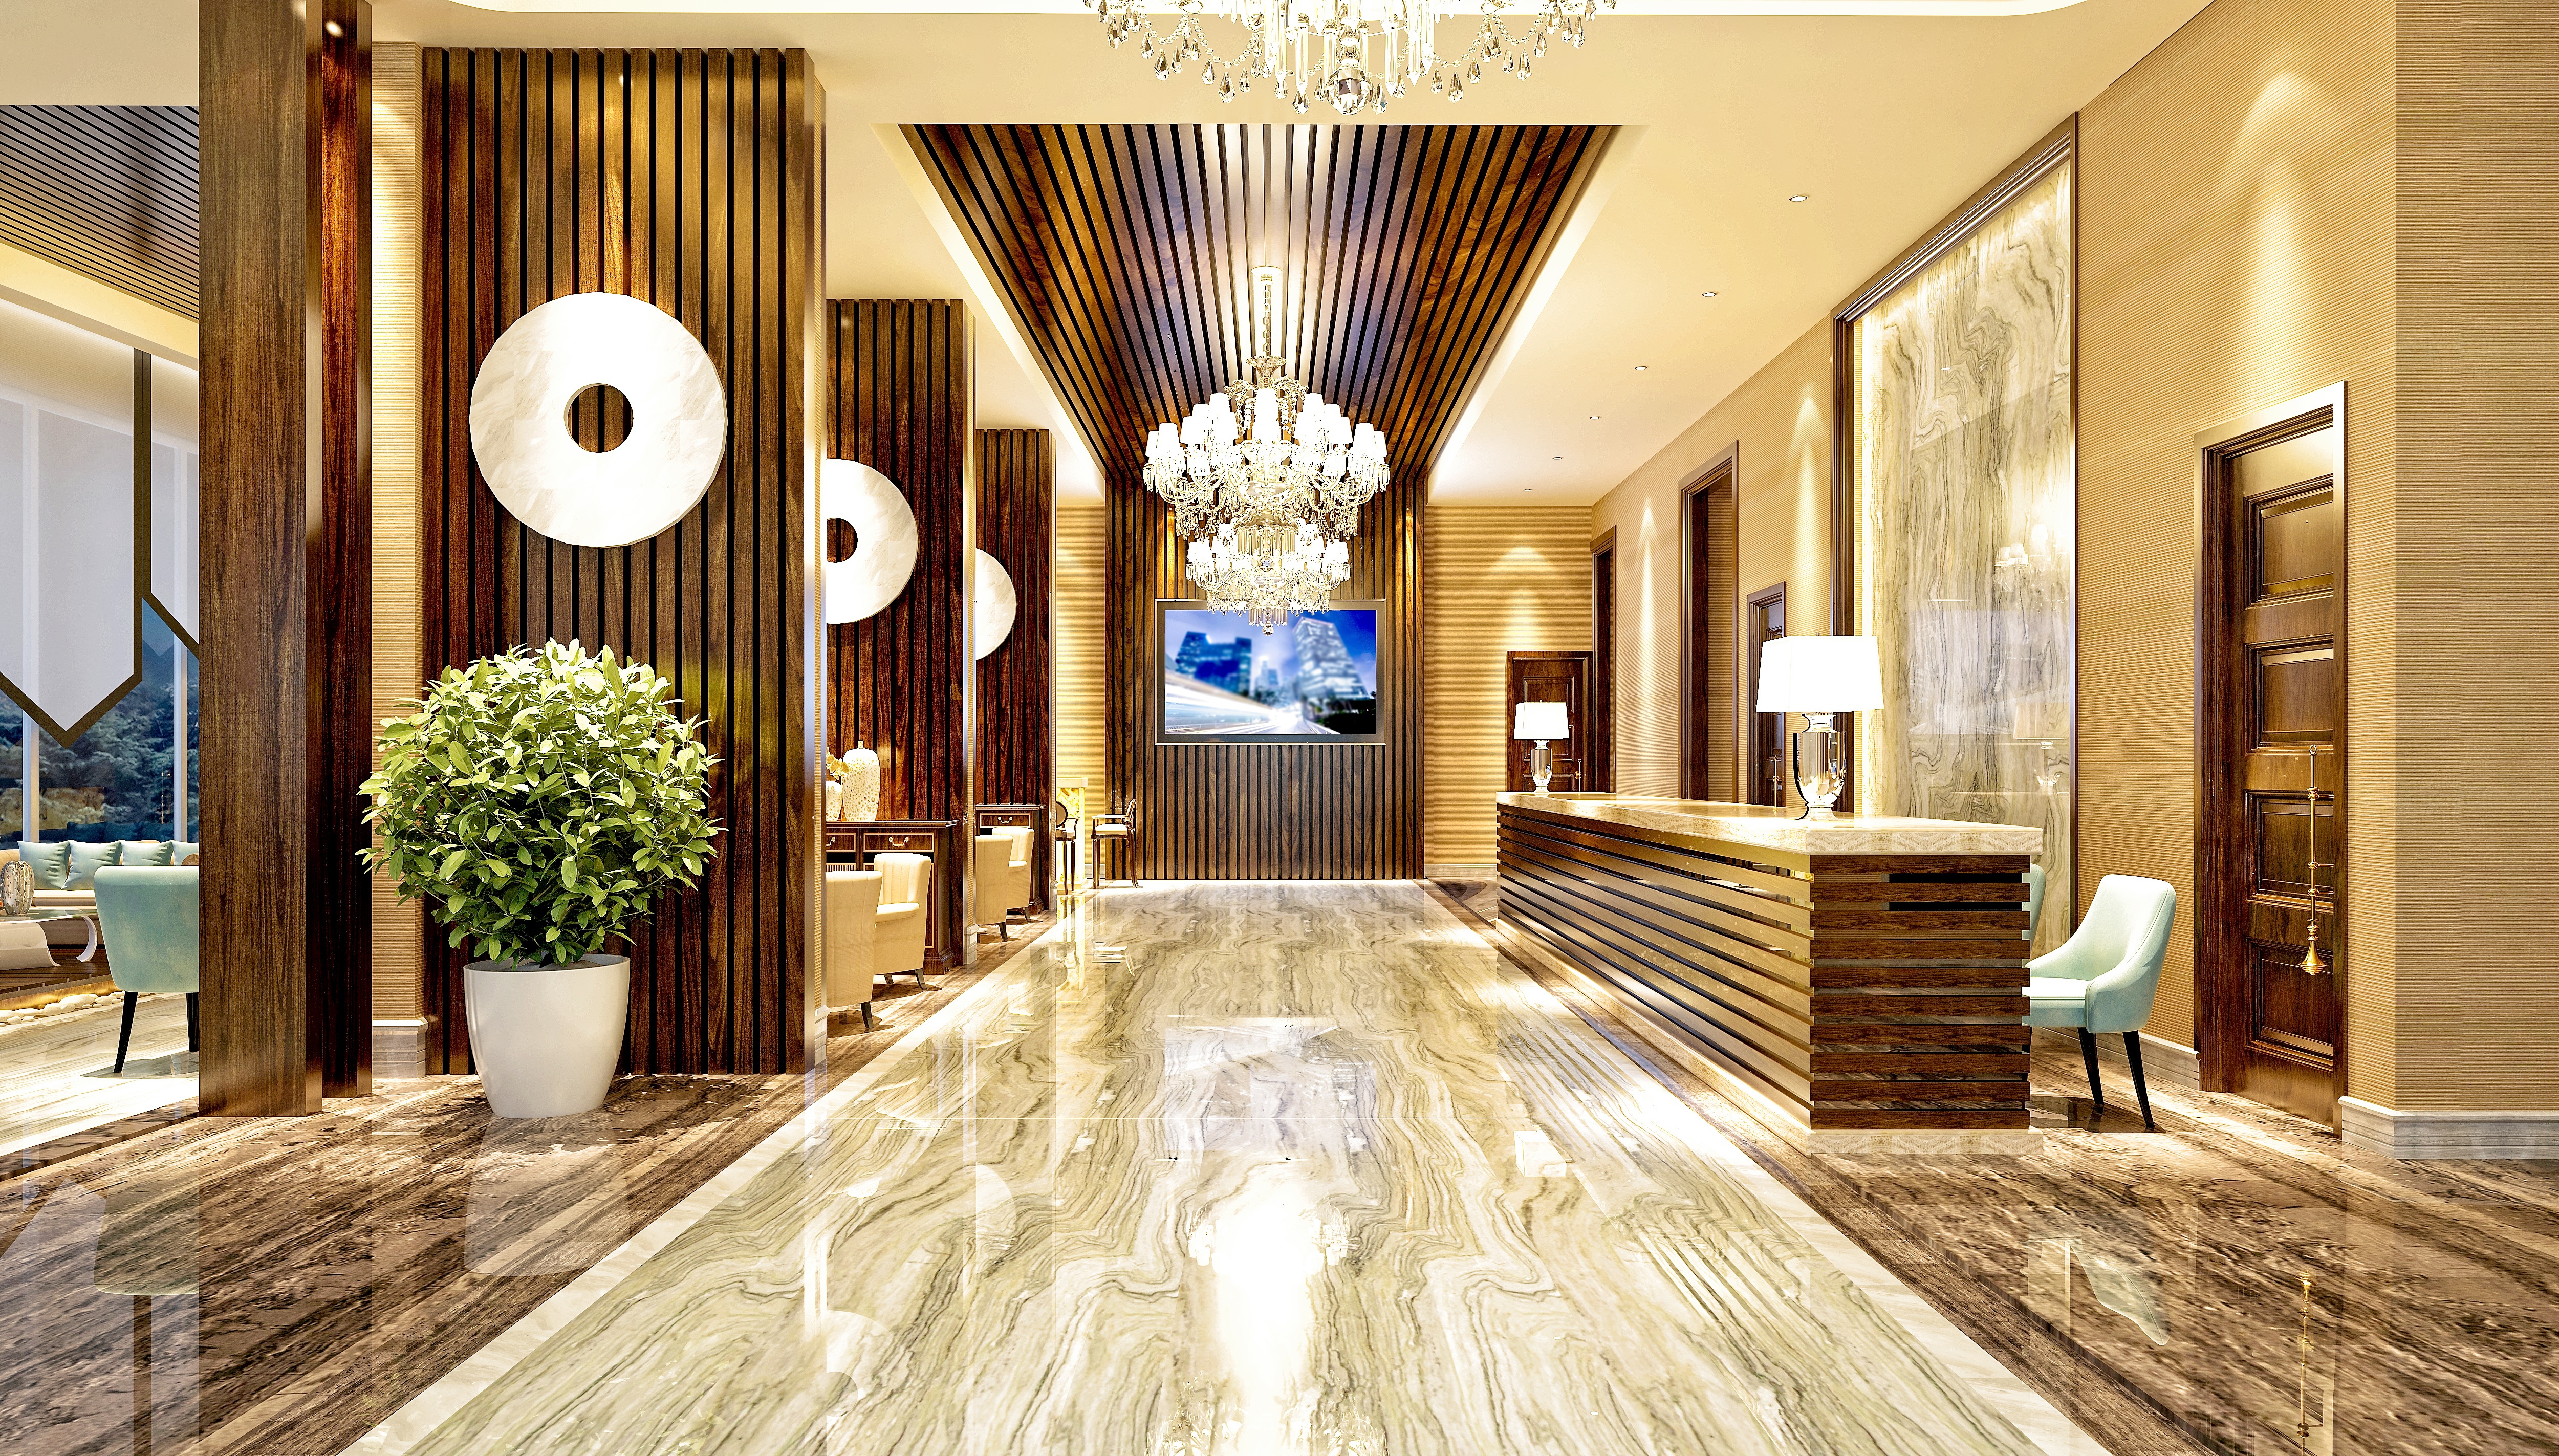 Floor areas. Холл вестибюль Luxury. Современный интерьер. Интерьер холла отеля. Дизайн интерьера гостиницы.